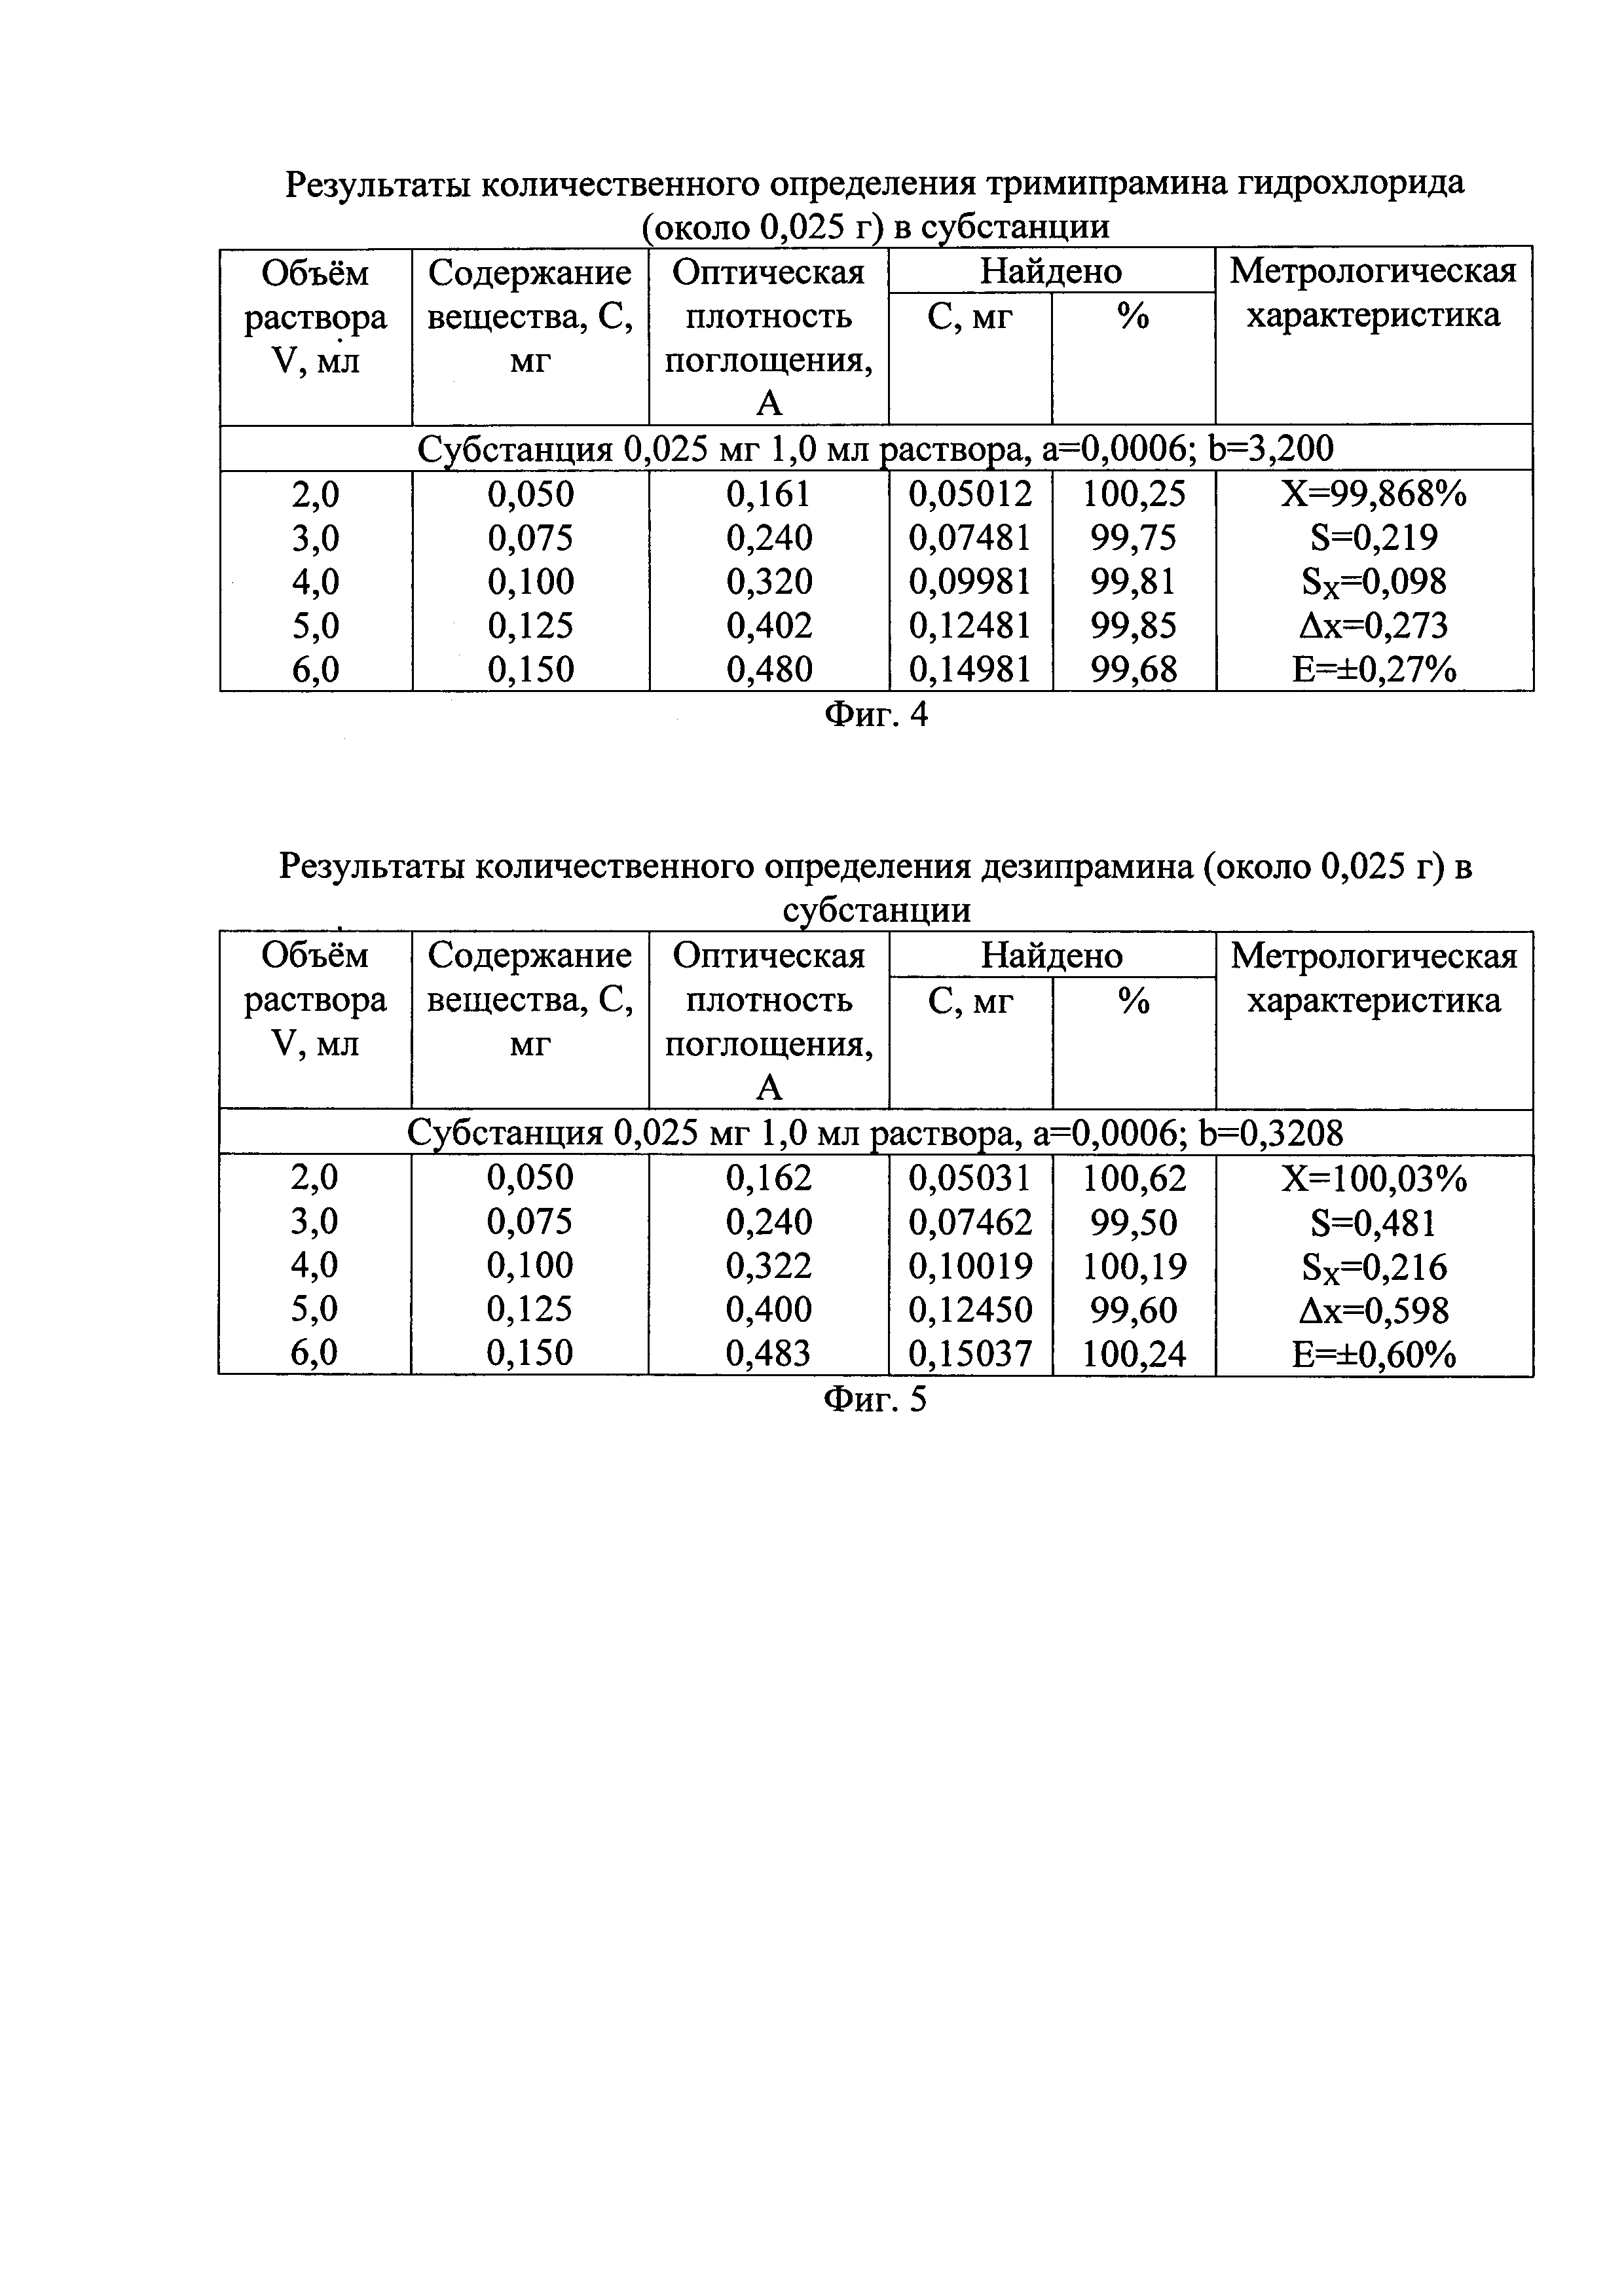 Способ количественного определения производных дибензазепинов (группы ипраминов)